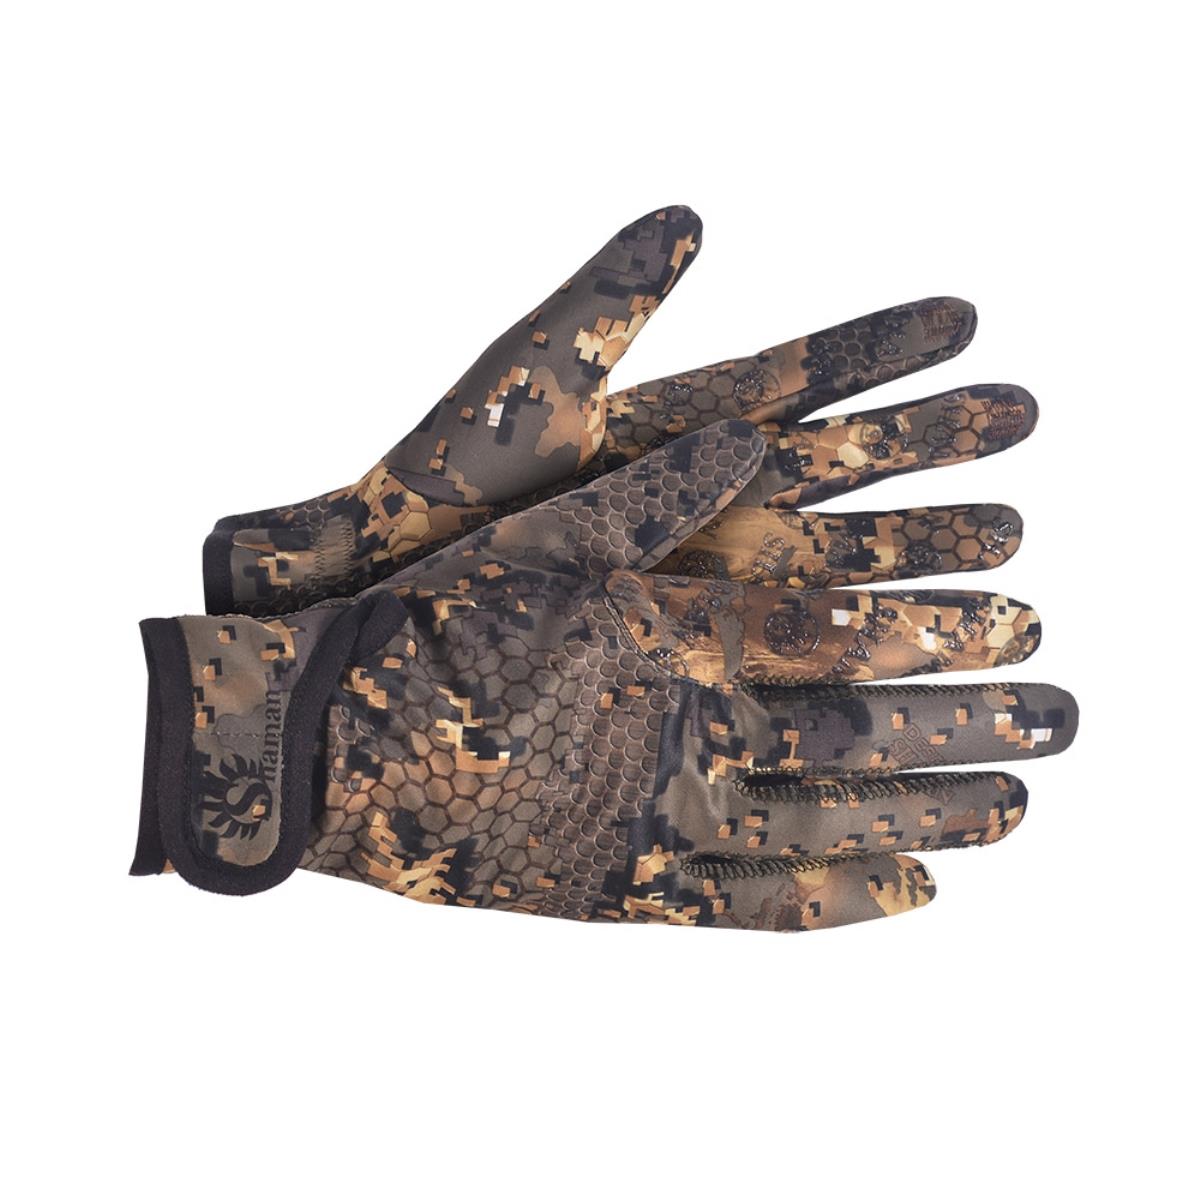 Перчатки Apex soft (S-700) SHAMAN перчатки vileda для деликатных работ s